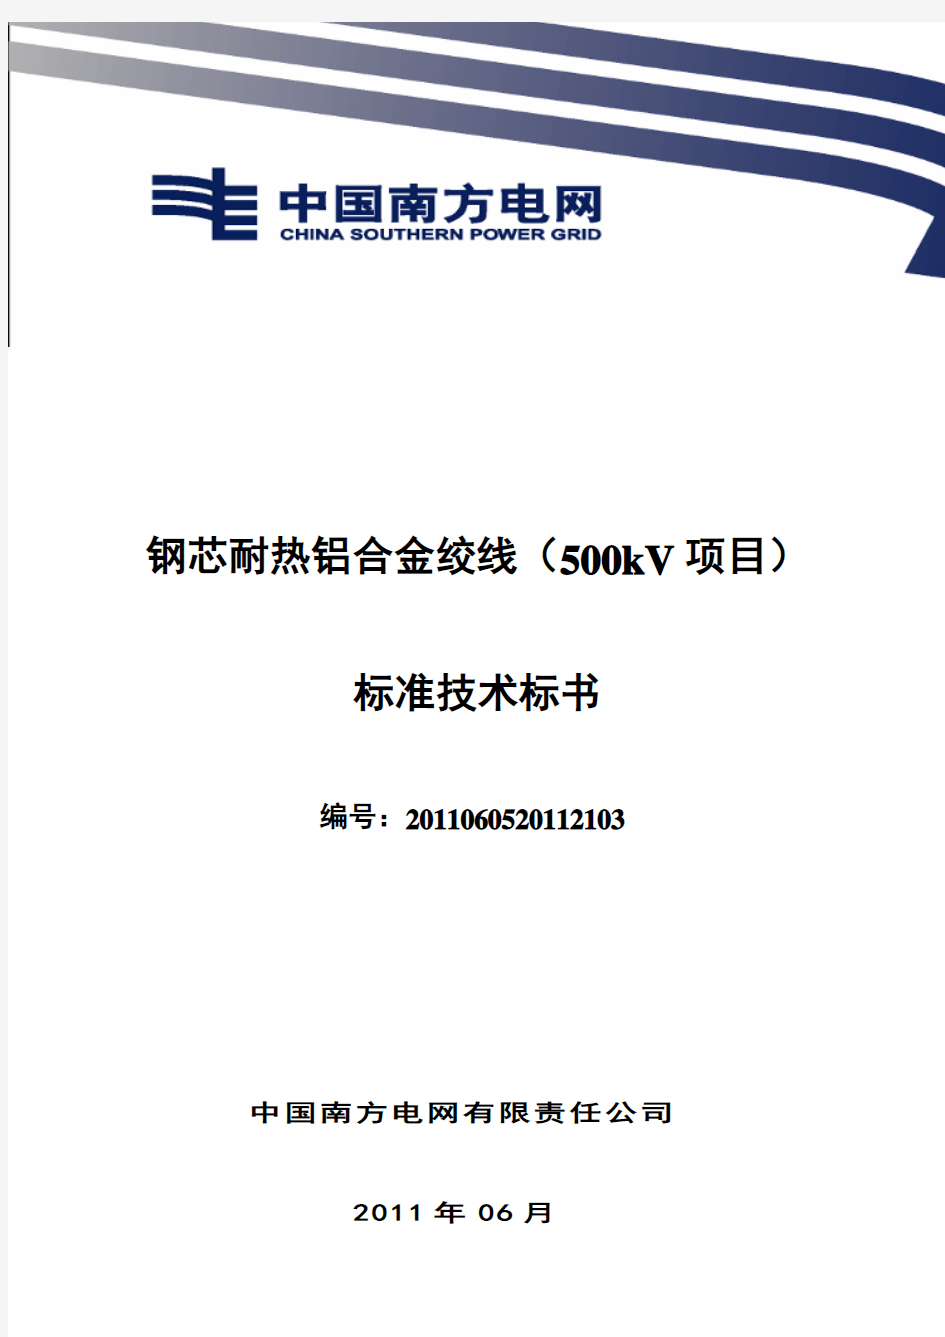 南方电网设备标准技术标书-钢芯耐热铝合金绞线(500kV项目)